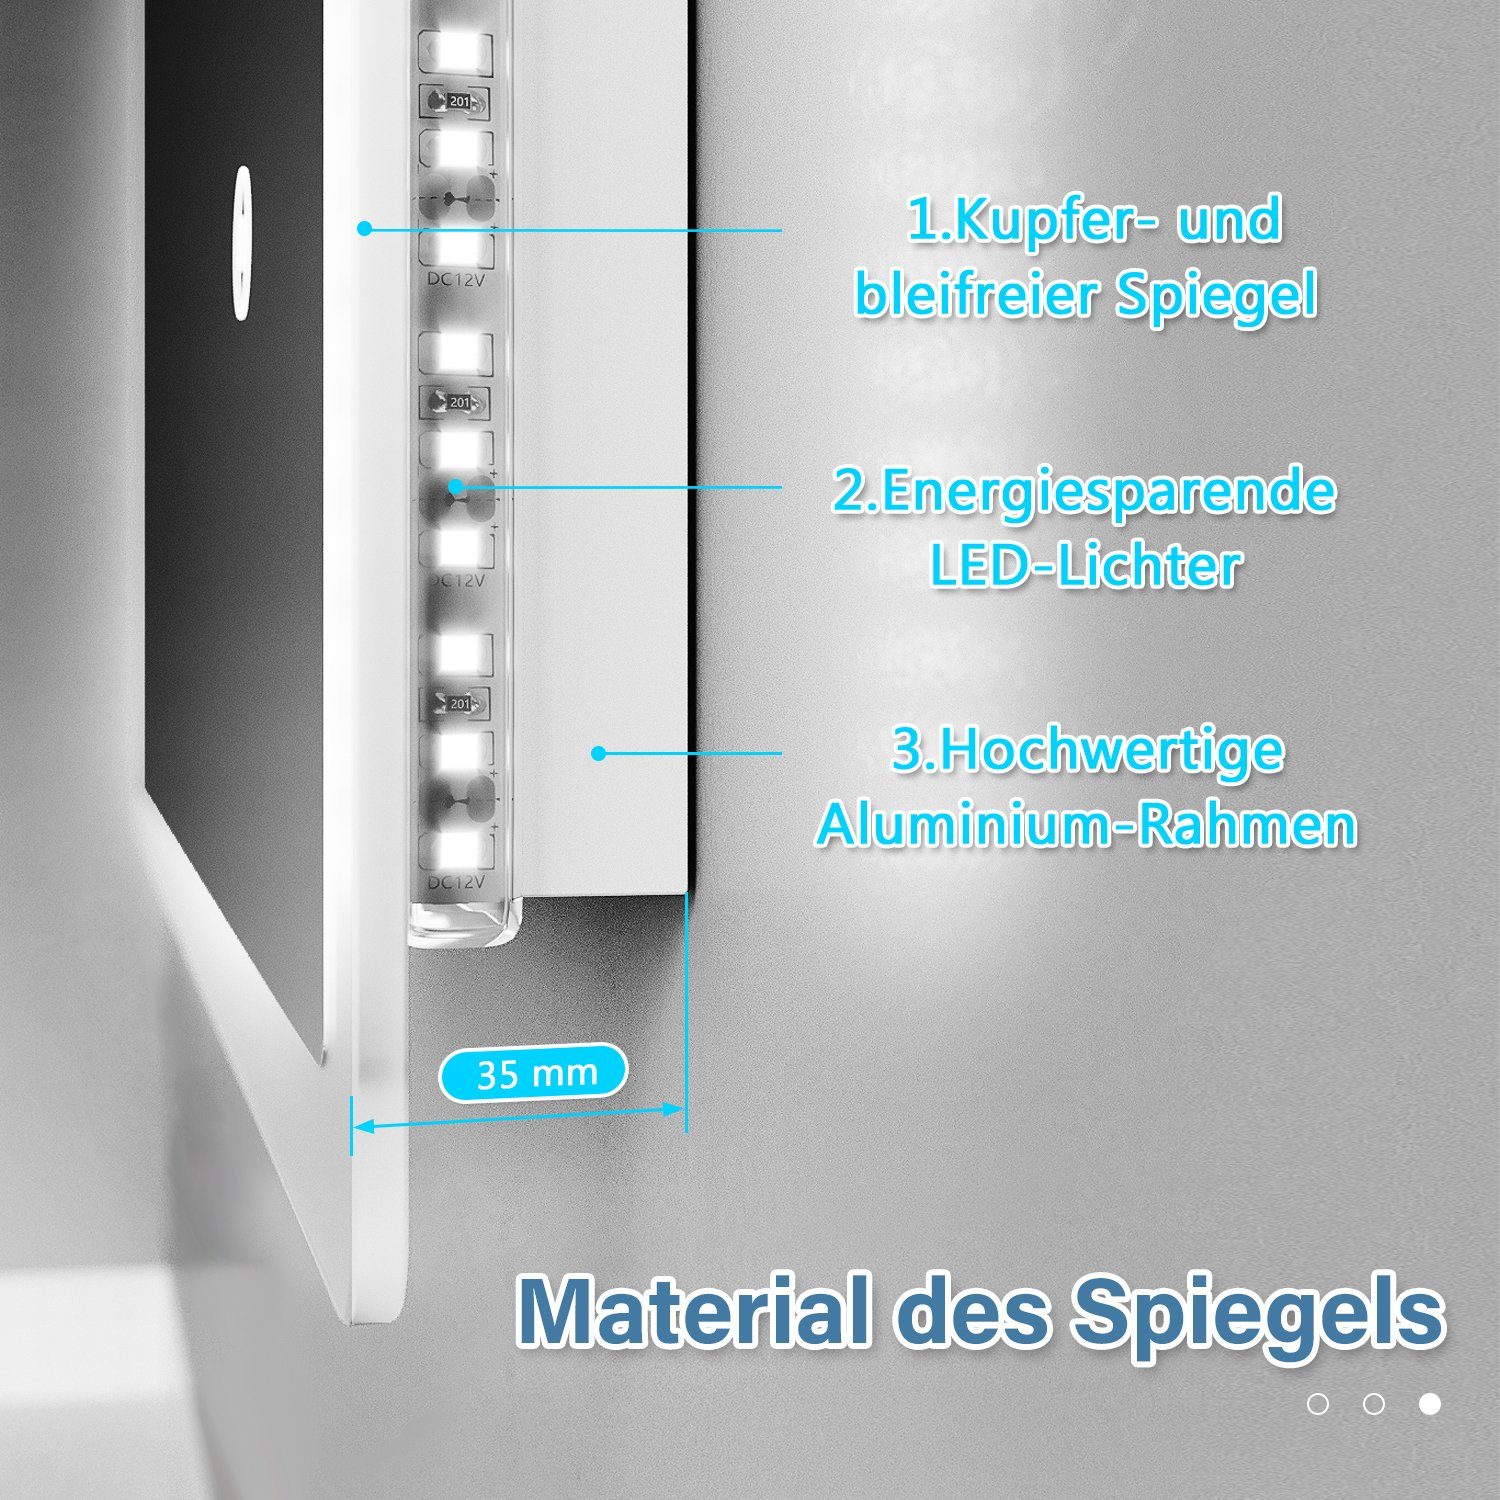 Badspiegel LED-Leiste LED 50x70 SONNI mit mit Beleuchtung,Touch LED cm kaltweiß Badspiegel Beleuchtung Schalter,IP44,wasserdichte Touch Schalter,